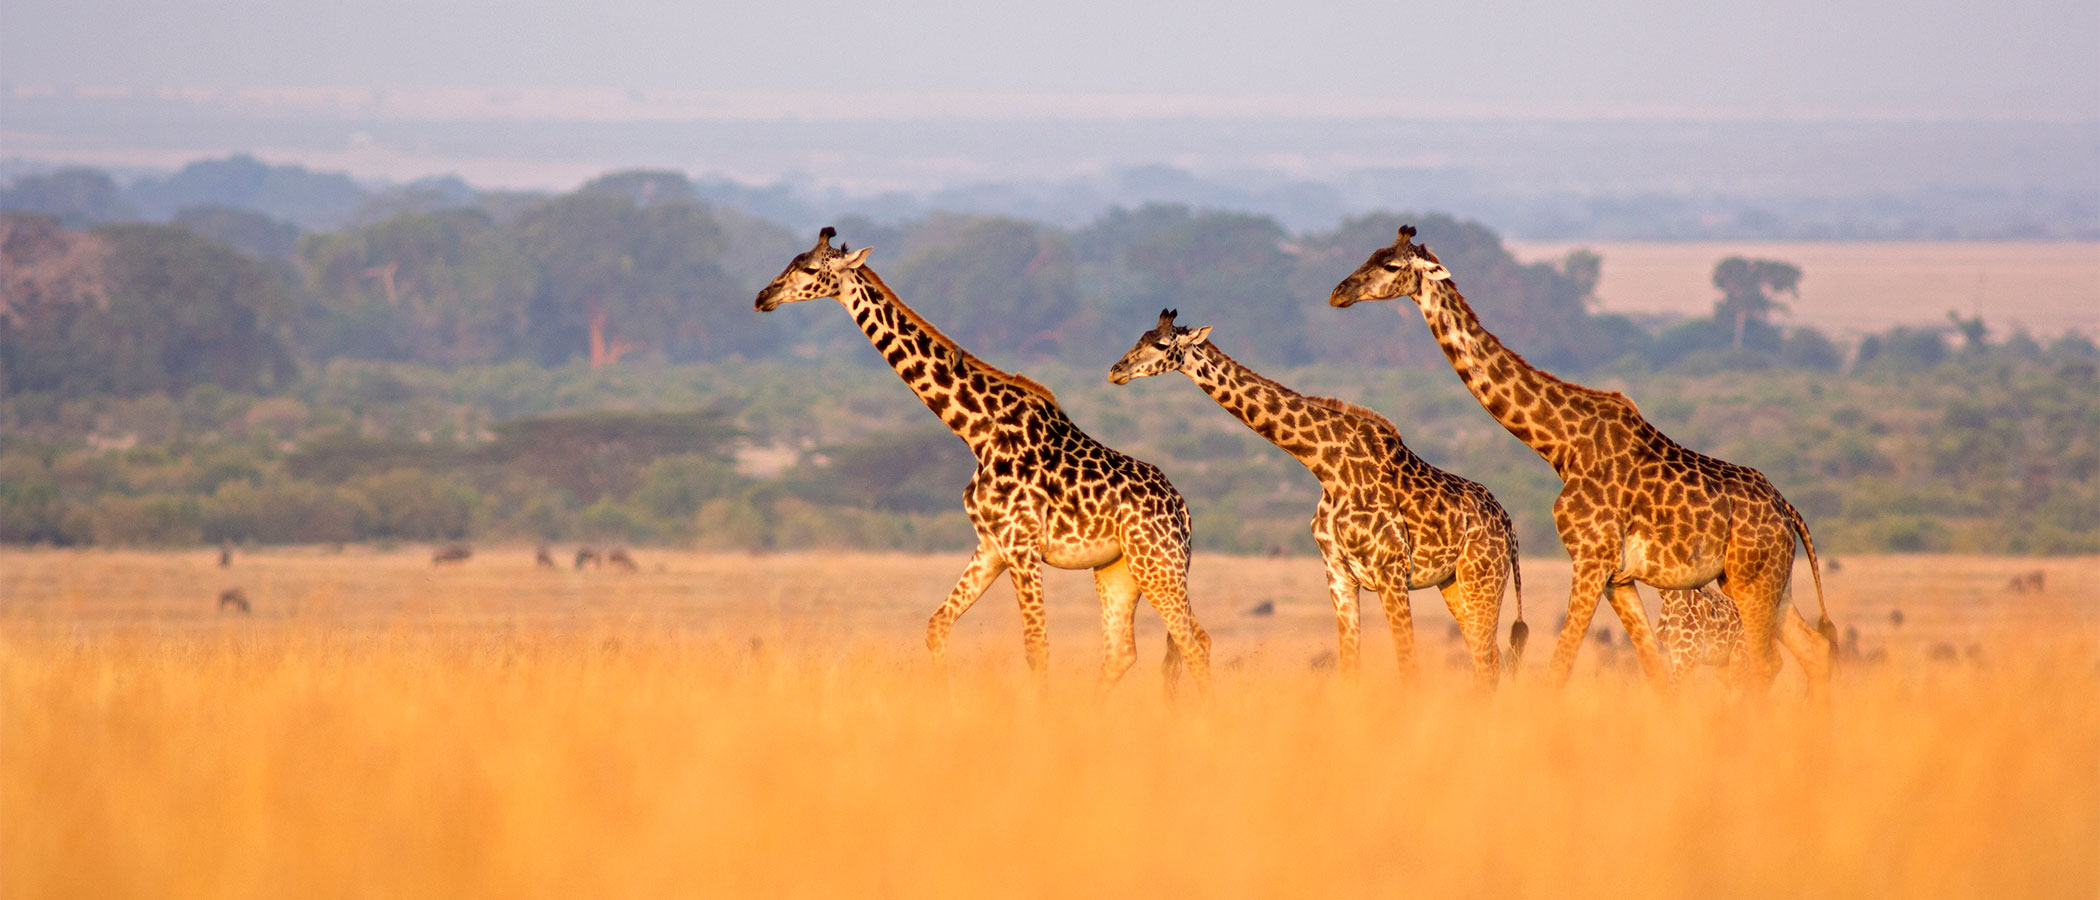 Giraffe on the grasslands of Masai Mara, Kenya